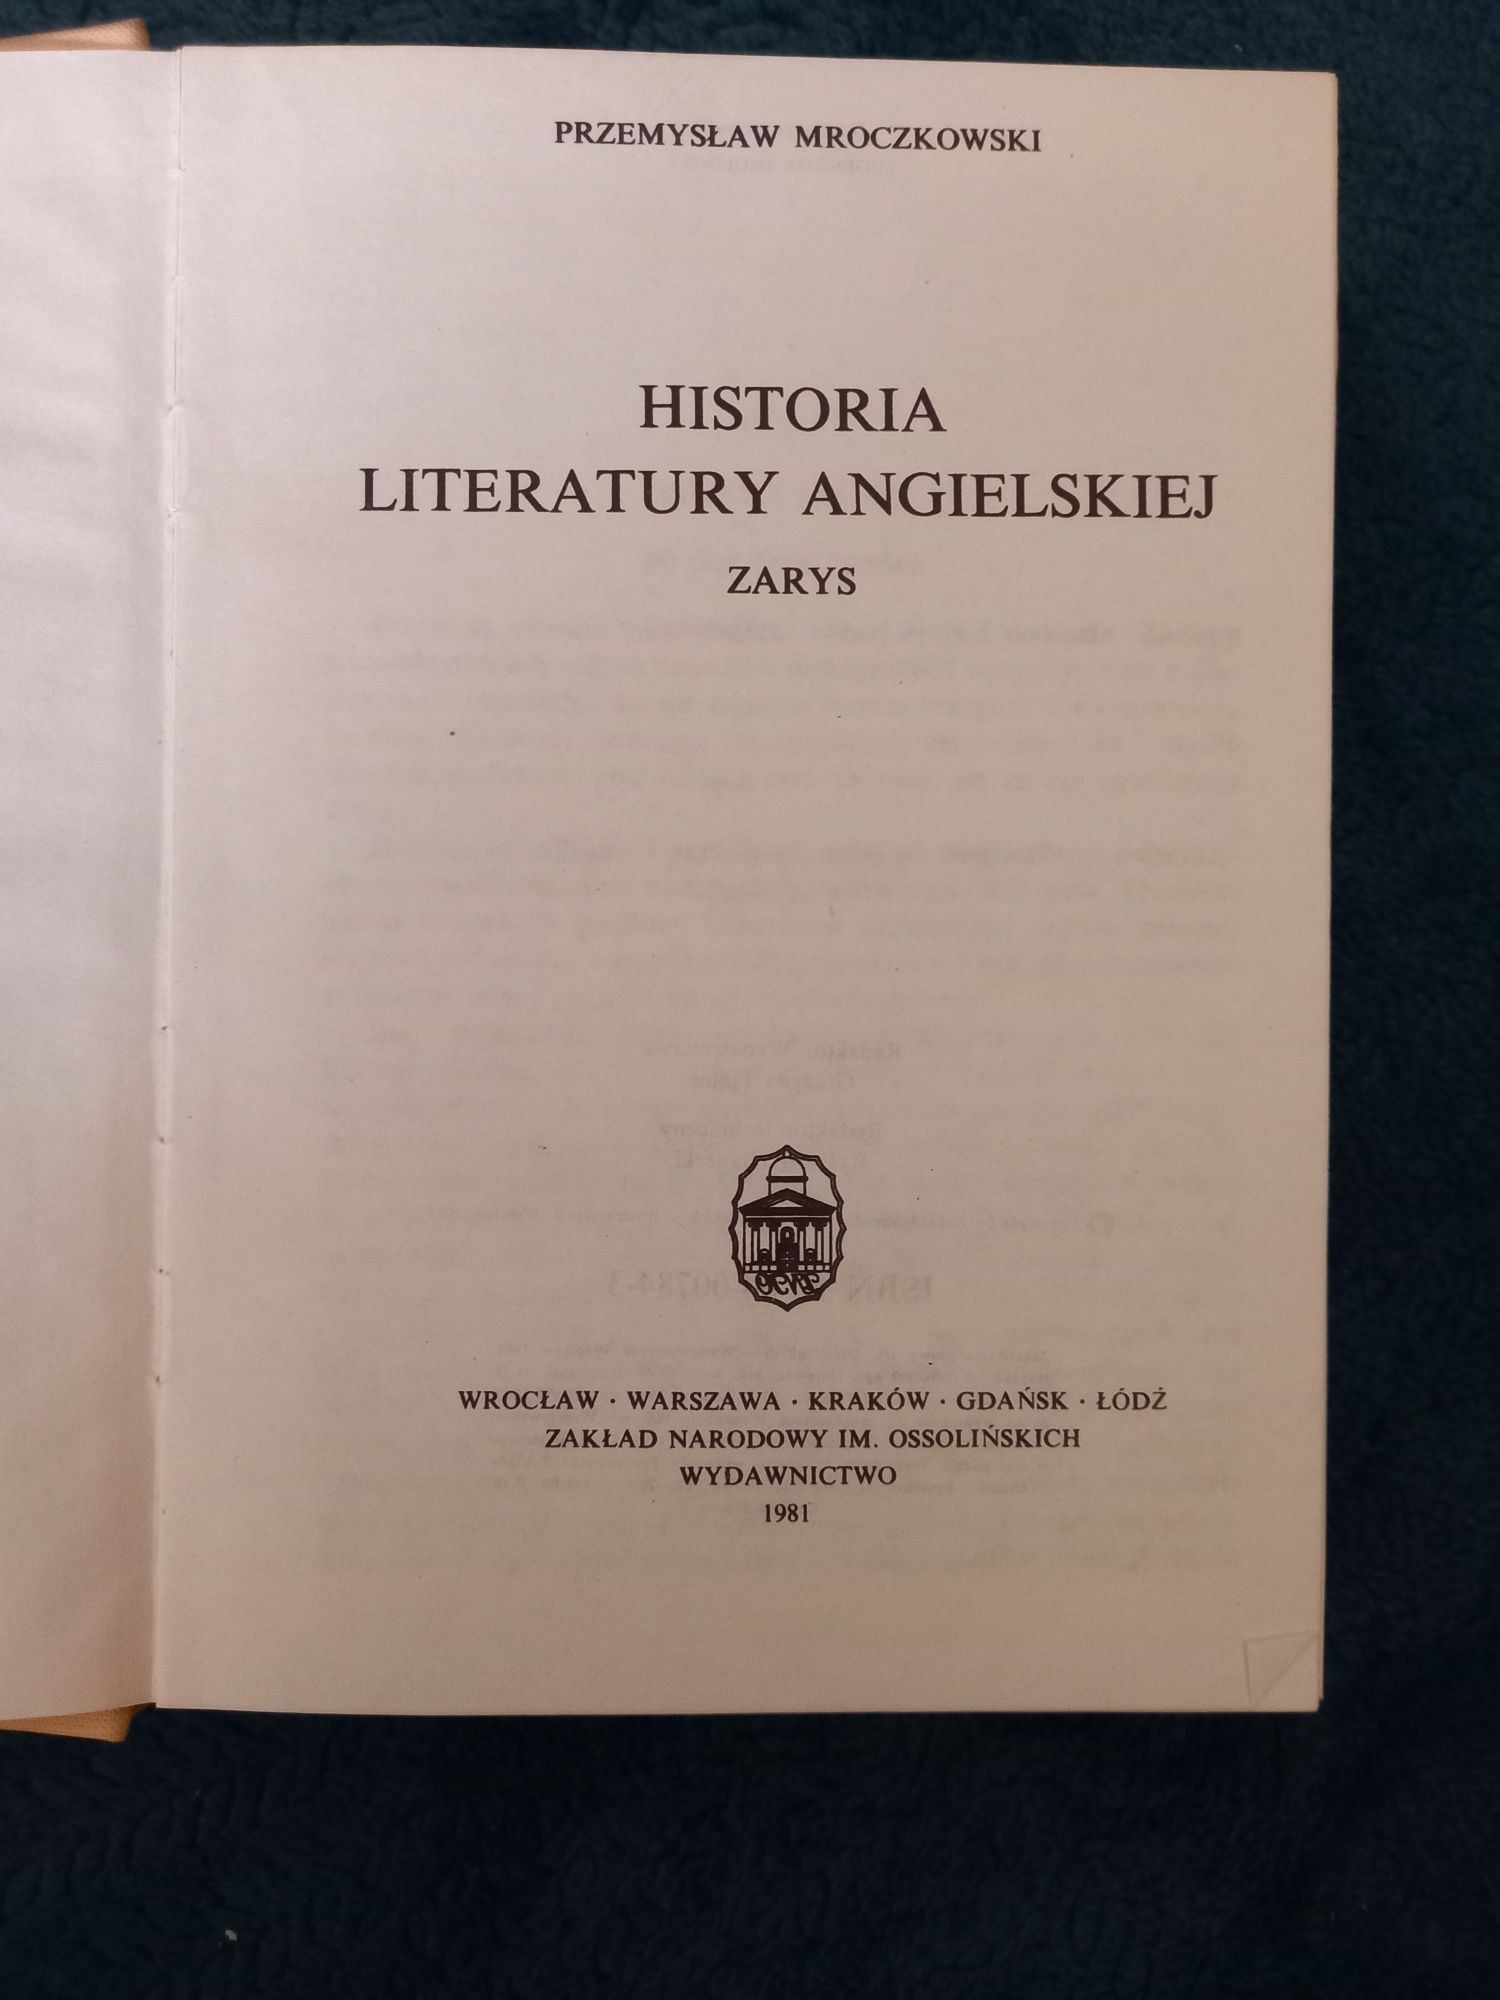 Historia Literatury Angielskiej Przemysław Mroczkowski